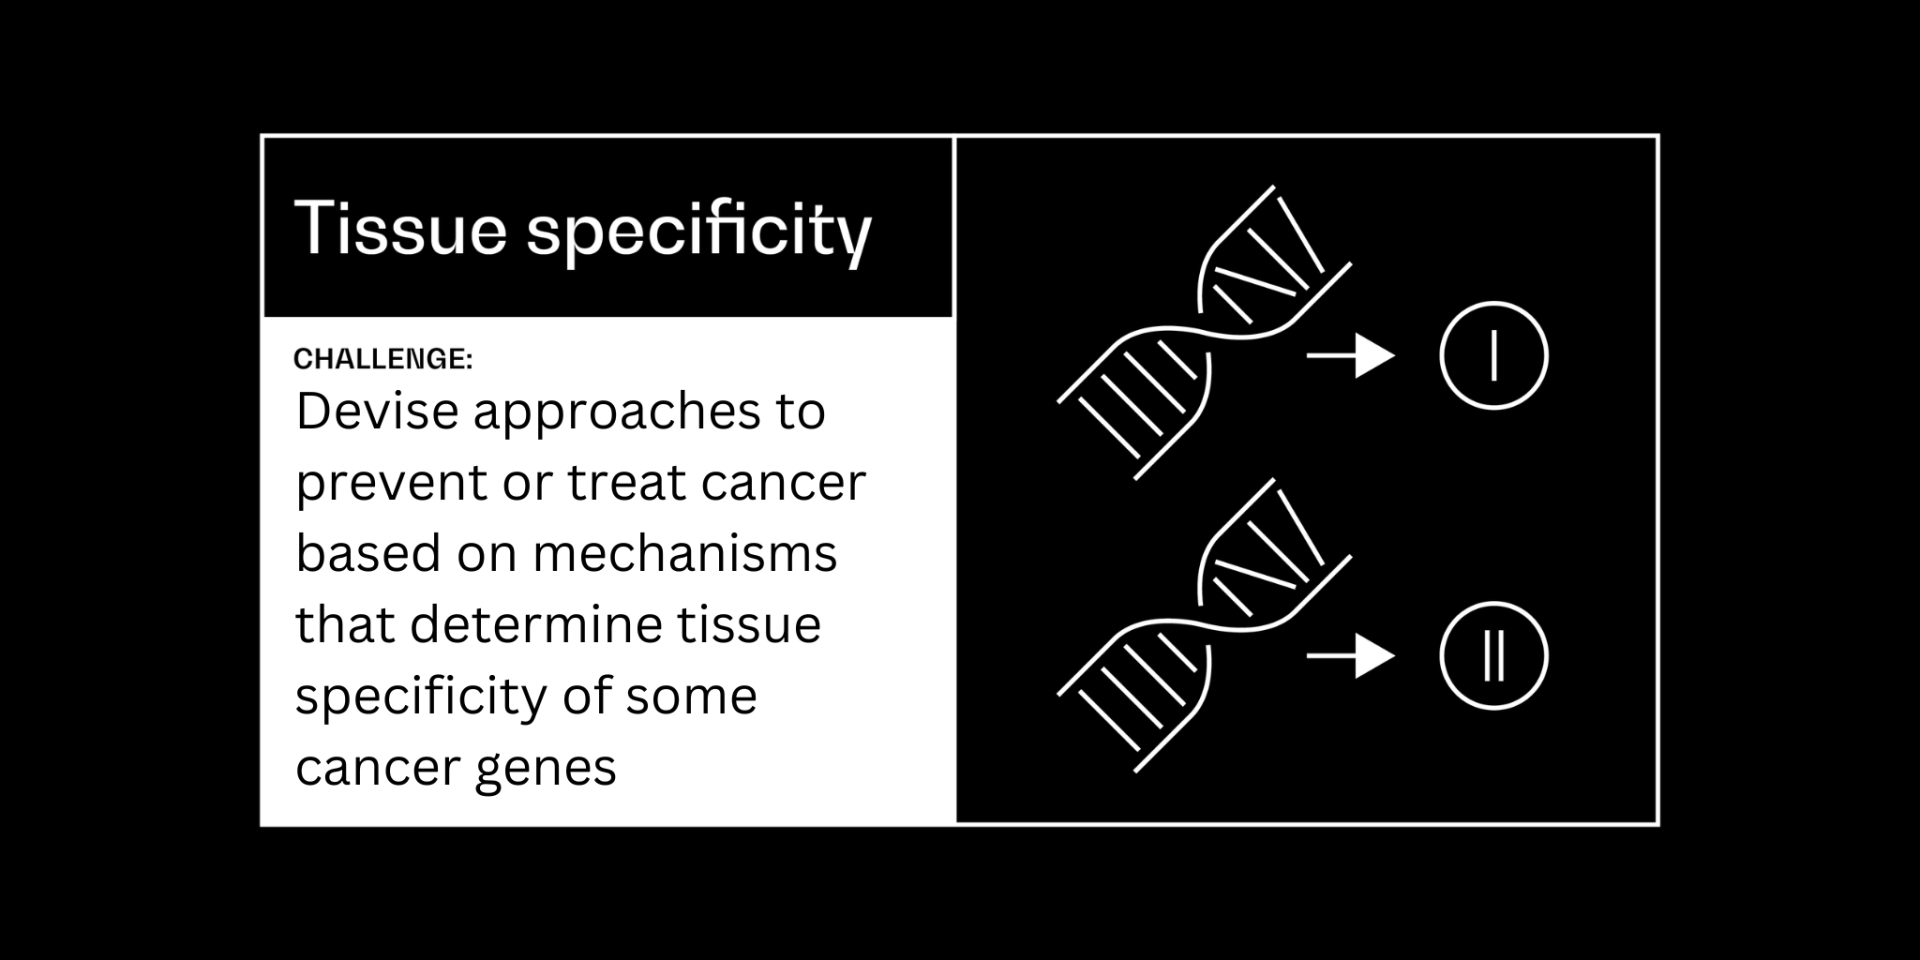 Tissue specificity cancer grand challenge